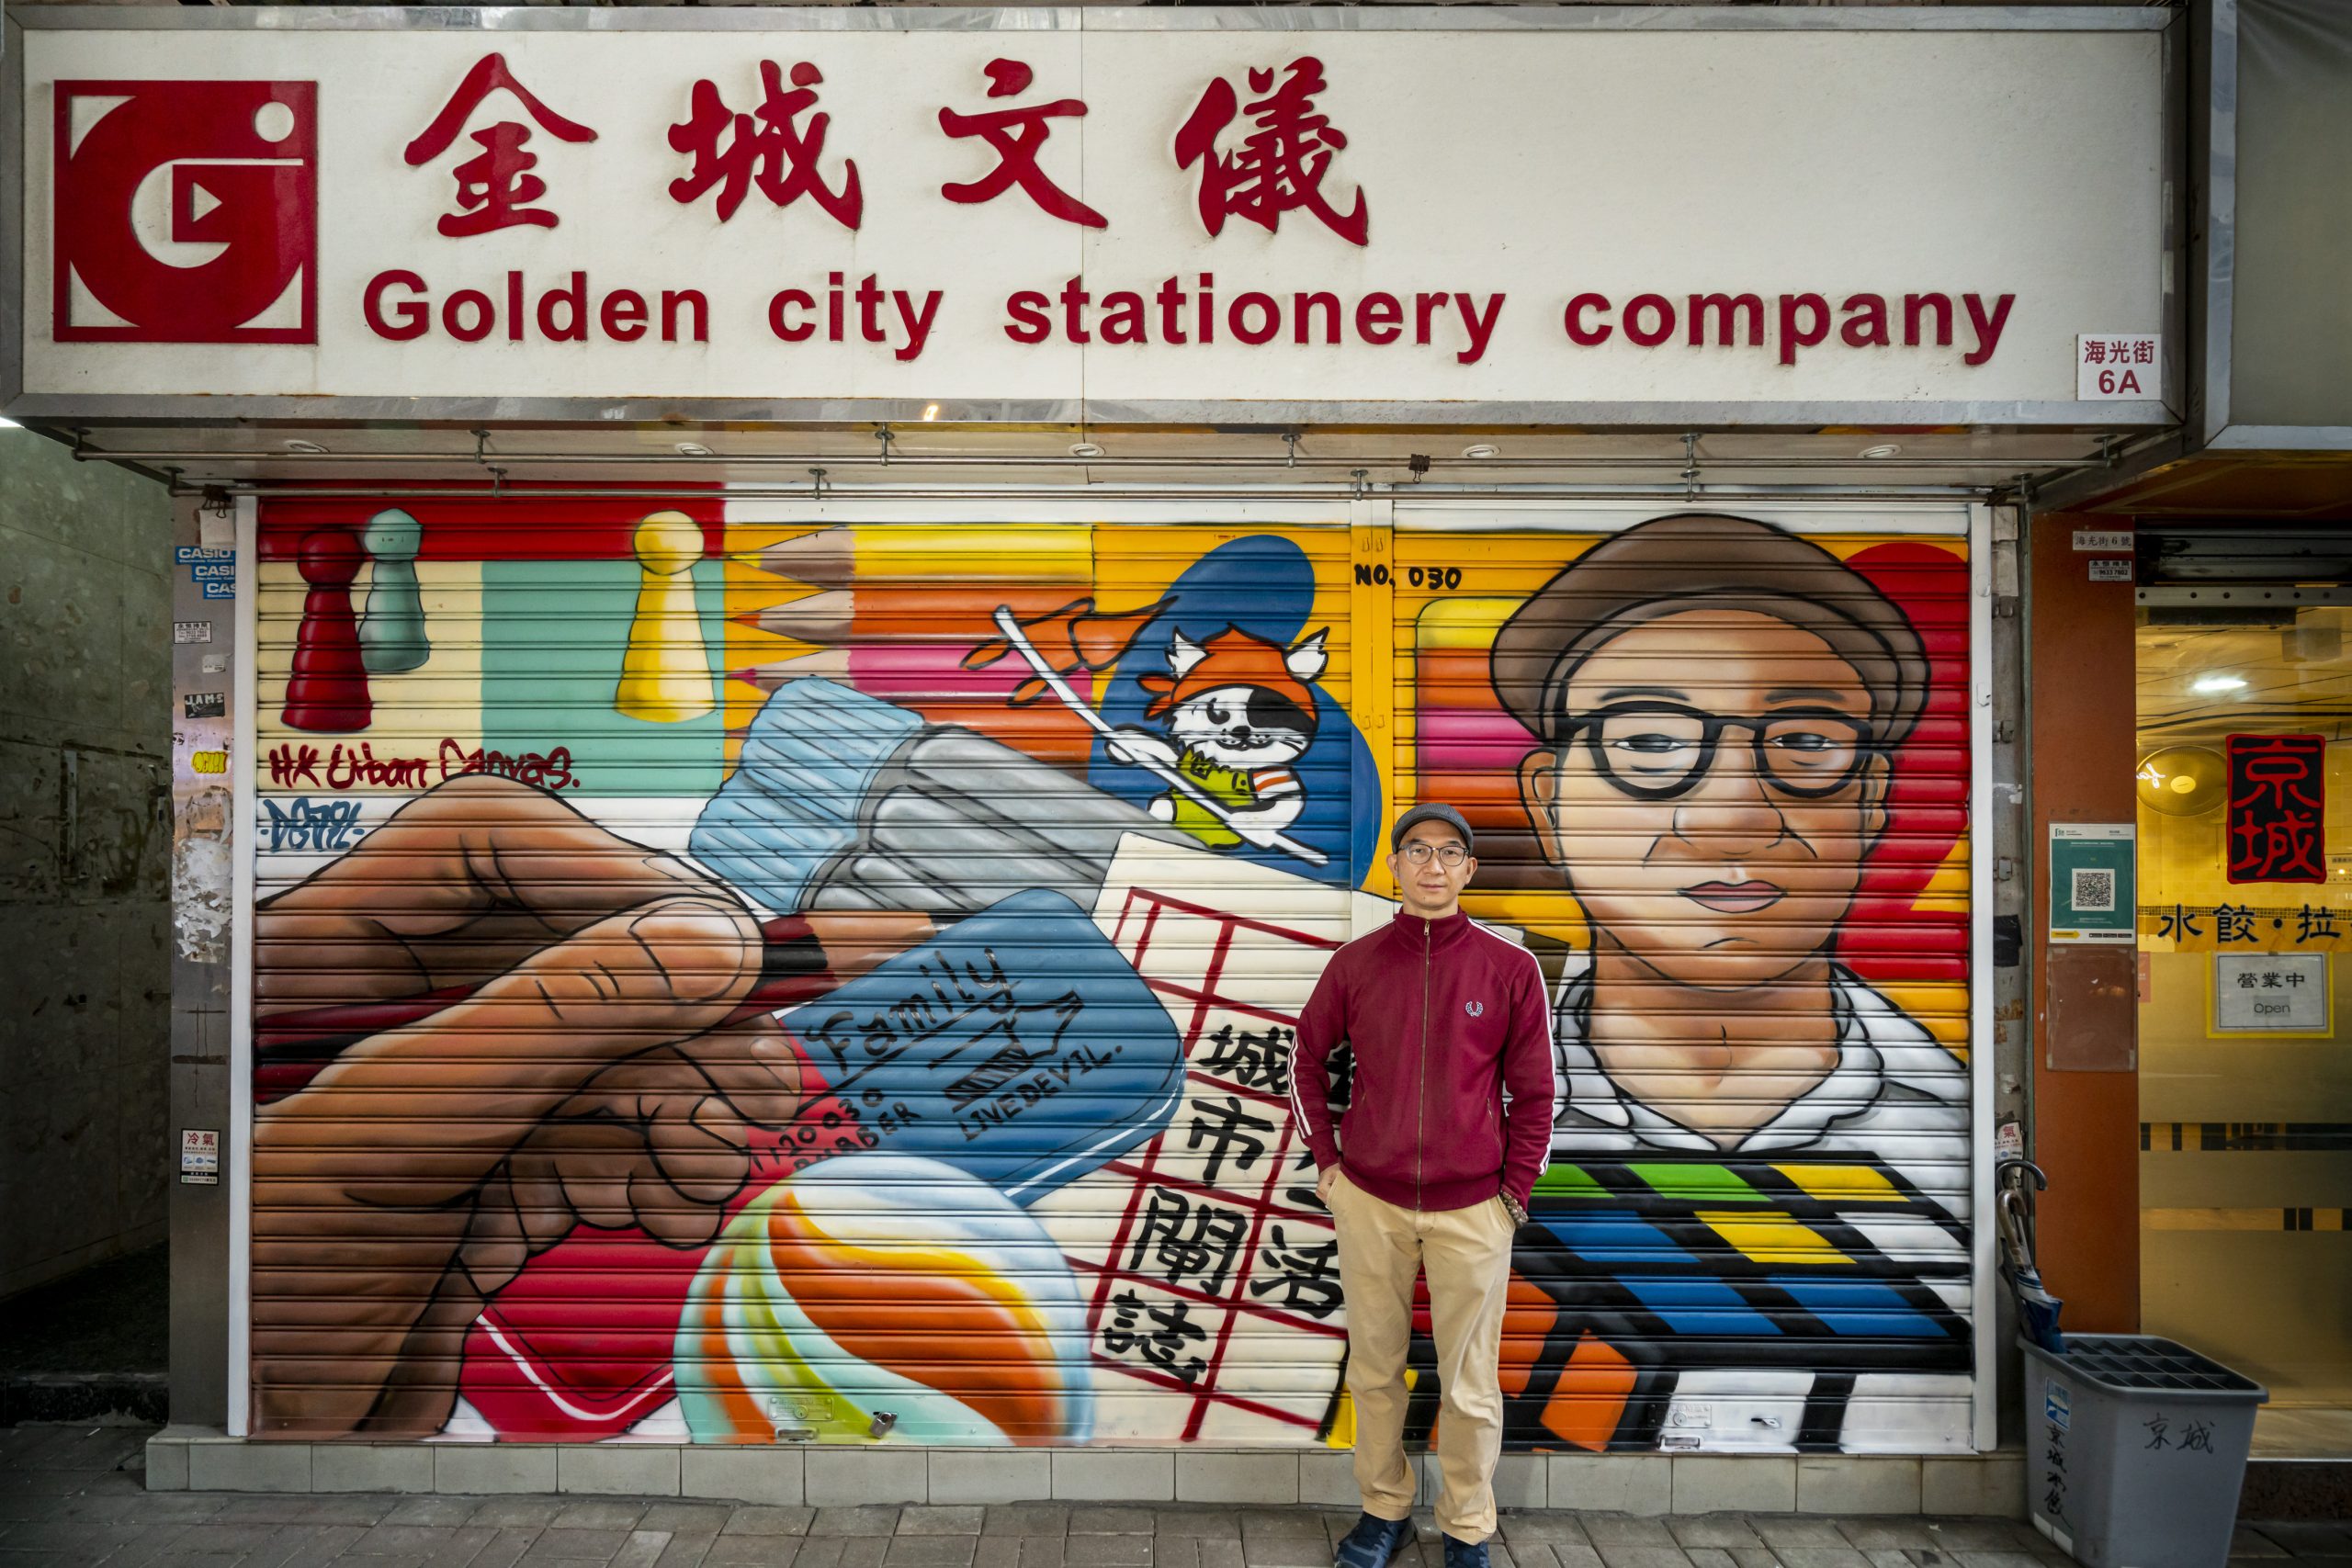 Hong Kong Urban Canvas project